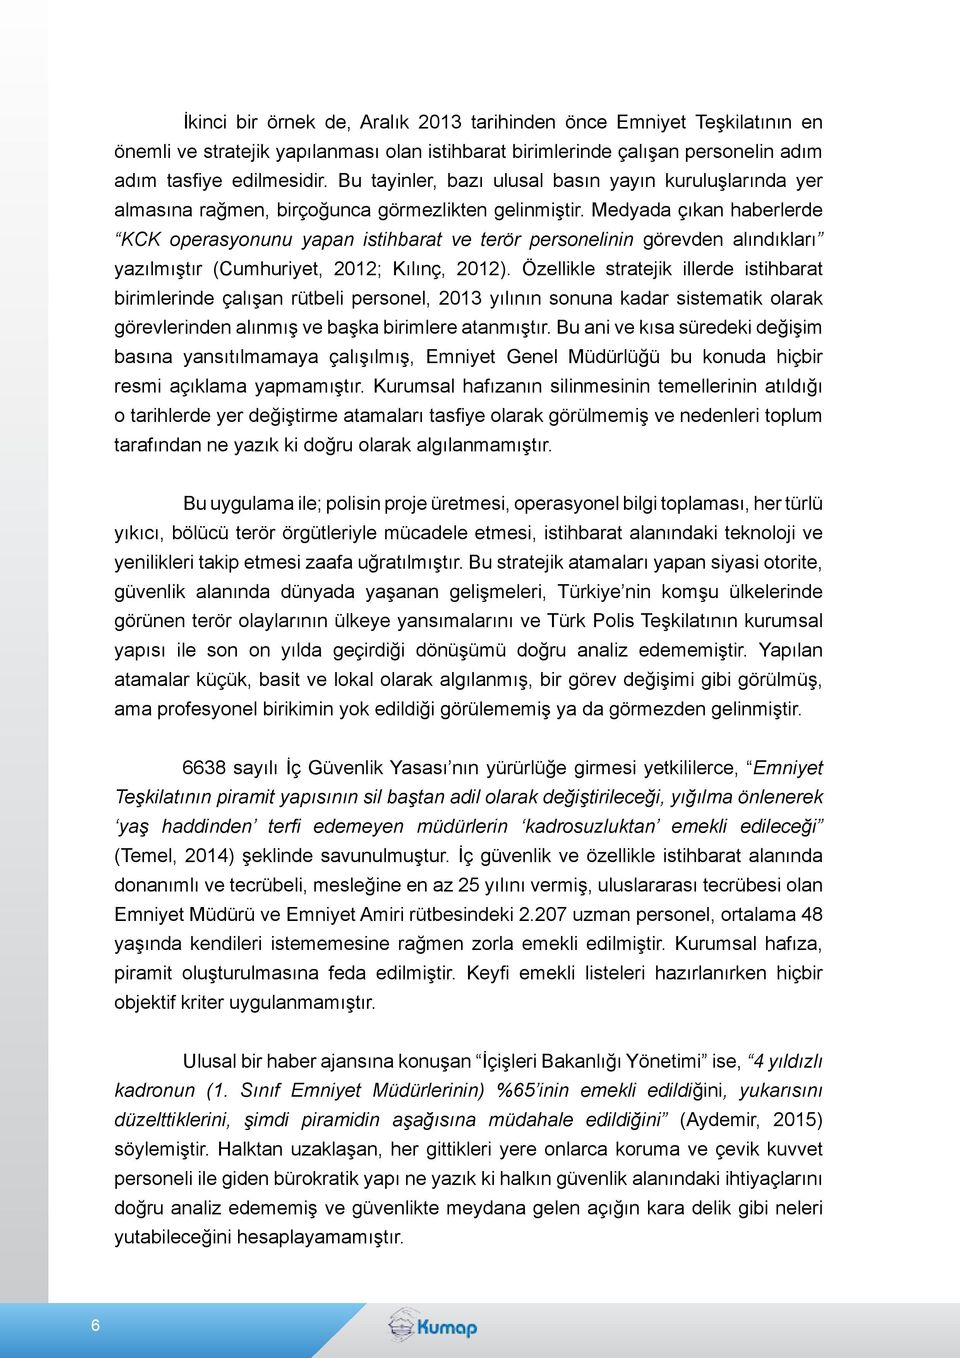 Medyada çıkan haberlerde KCK operasyonunu yapan istihbarat ve terör personelinin görevden alındıkları yazılmıştır (Cumhuriyet, 2012; Kılınç, 2012).